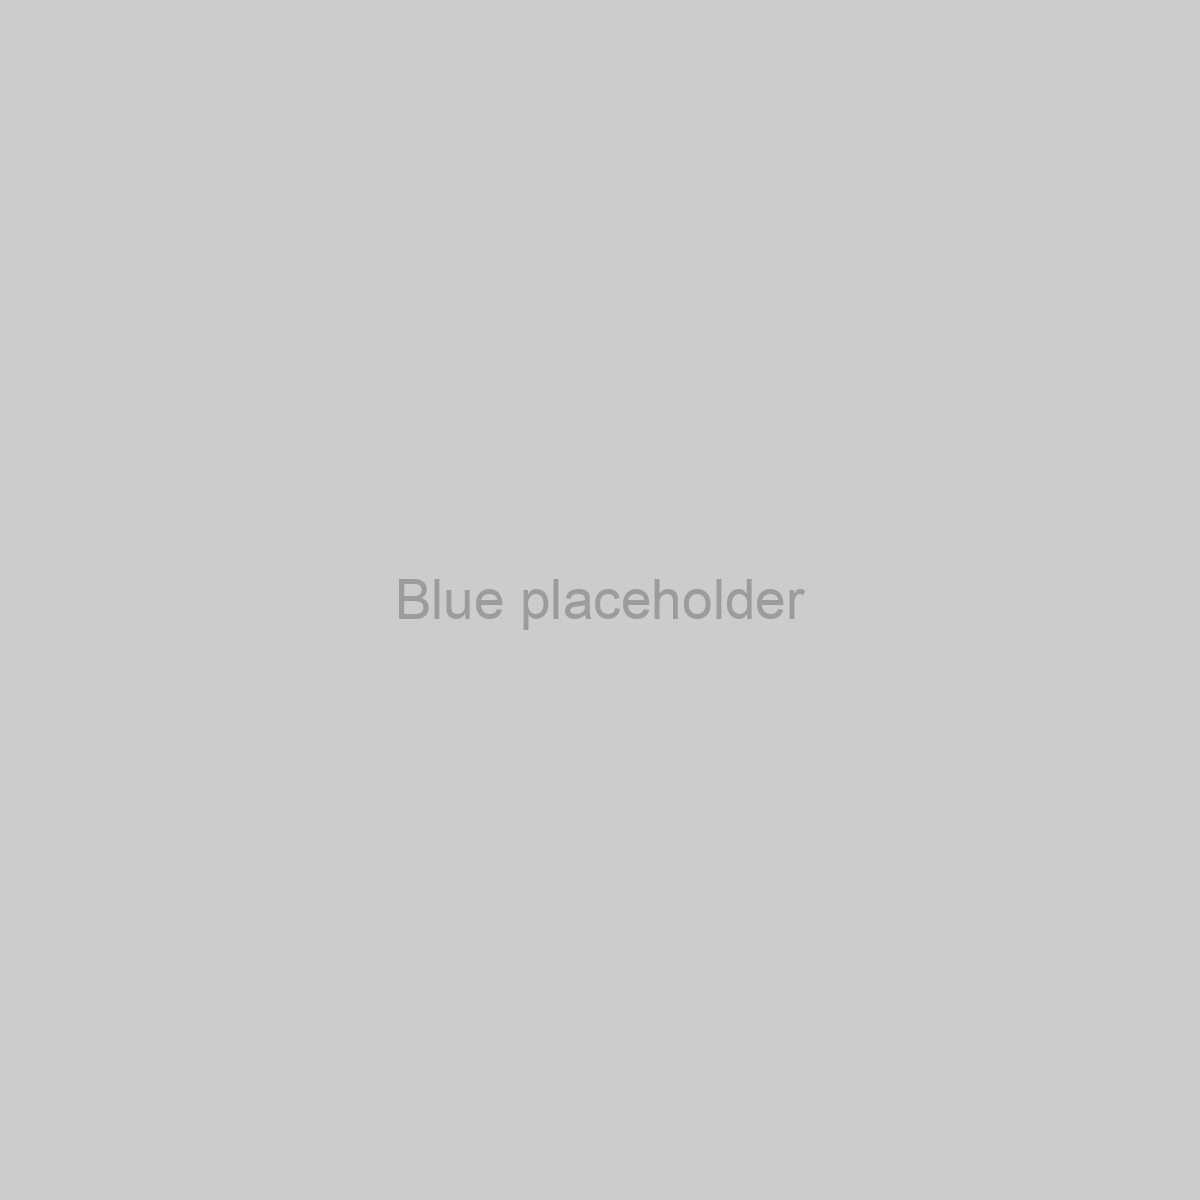 Blue Placeholder Image